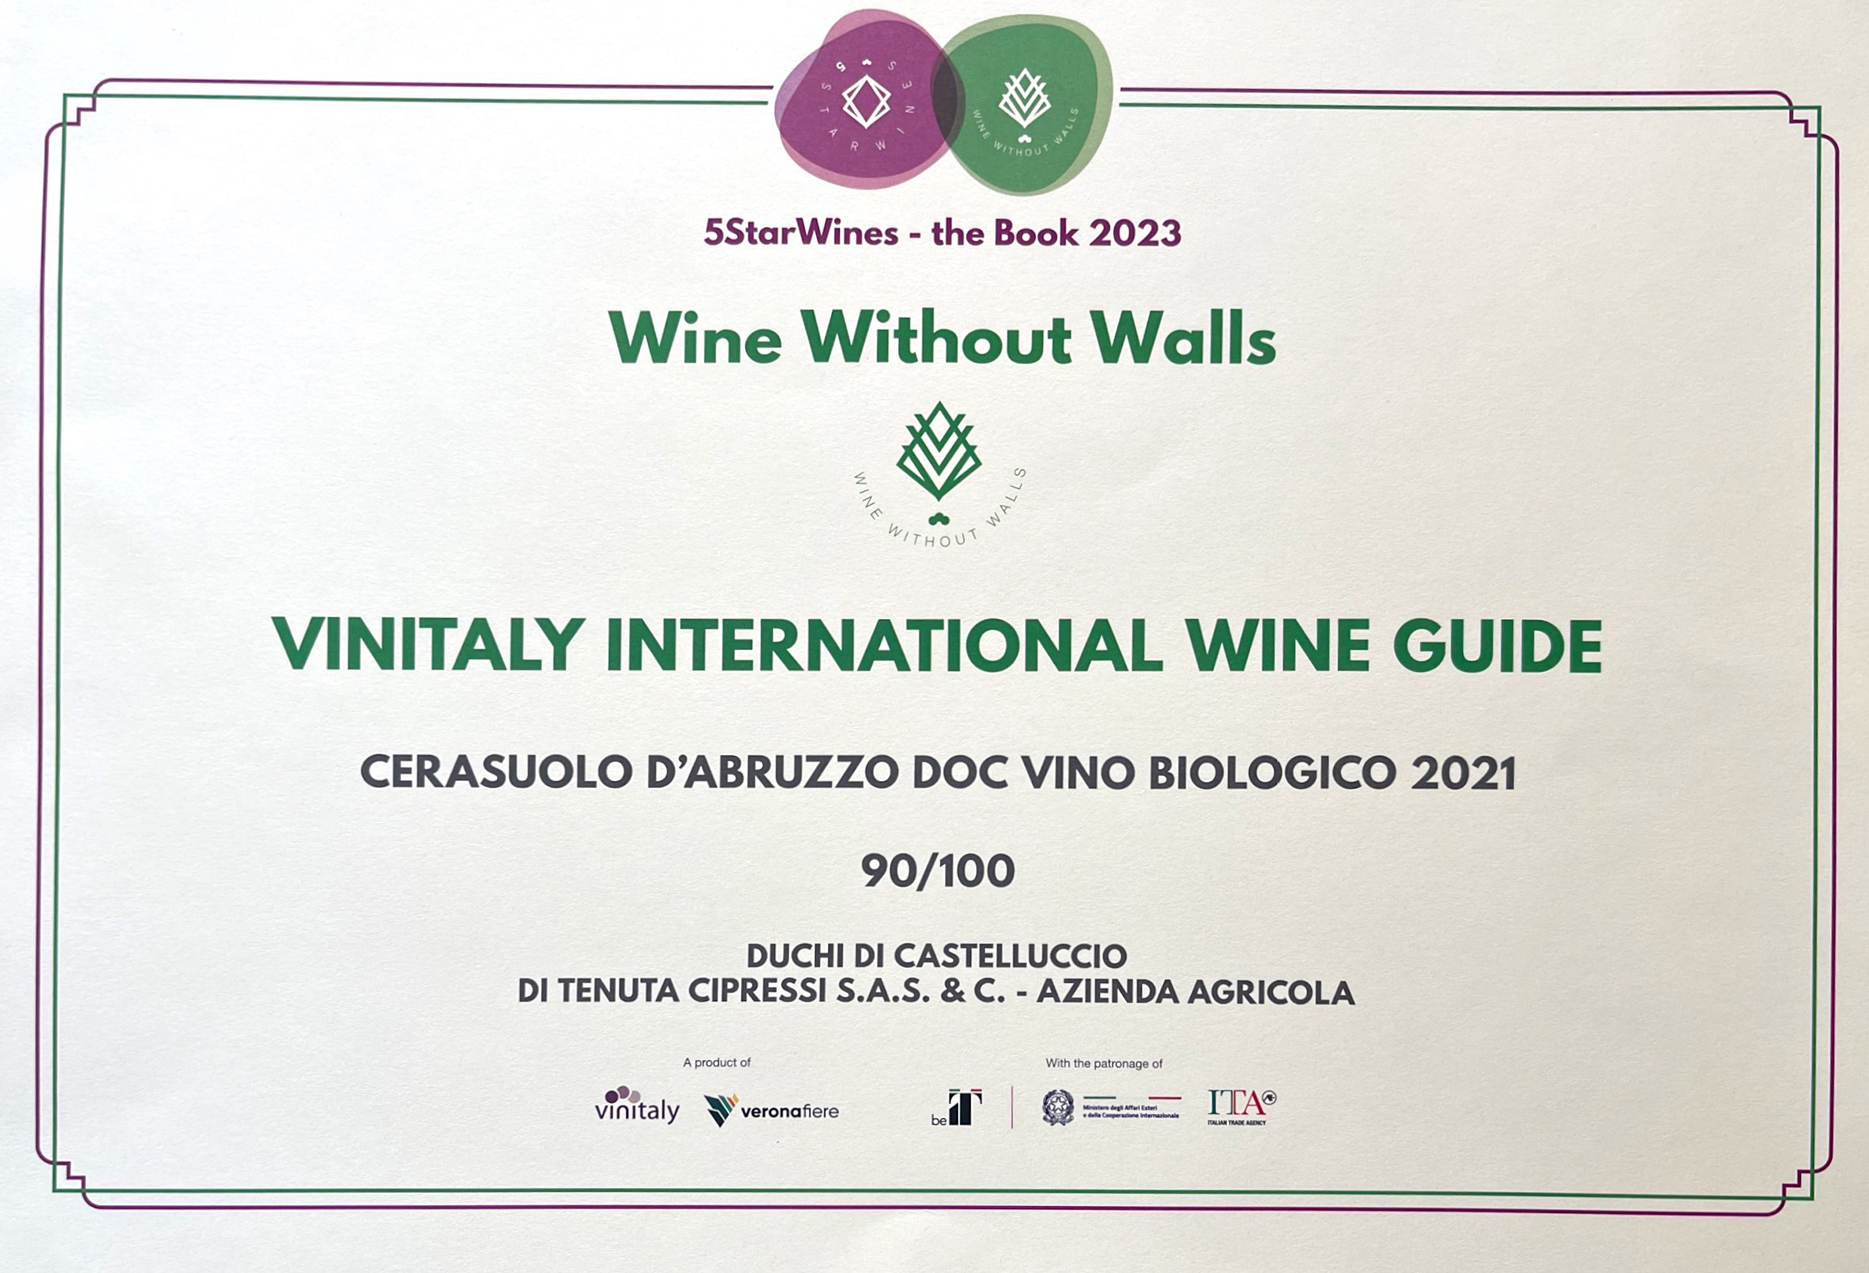 Winitaly Wine Guide 2022 AWARD for Duchi Cerasuolo d’Abruzzo